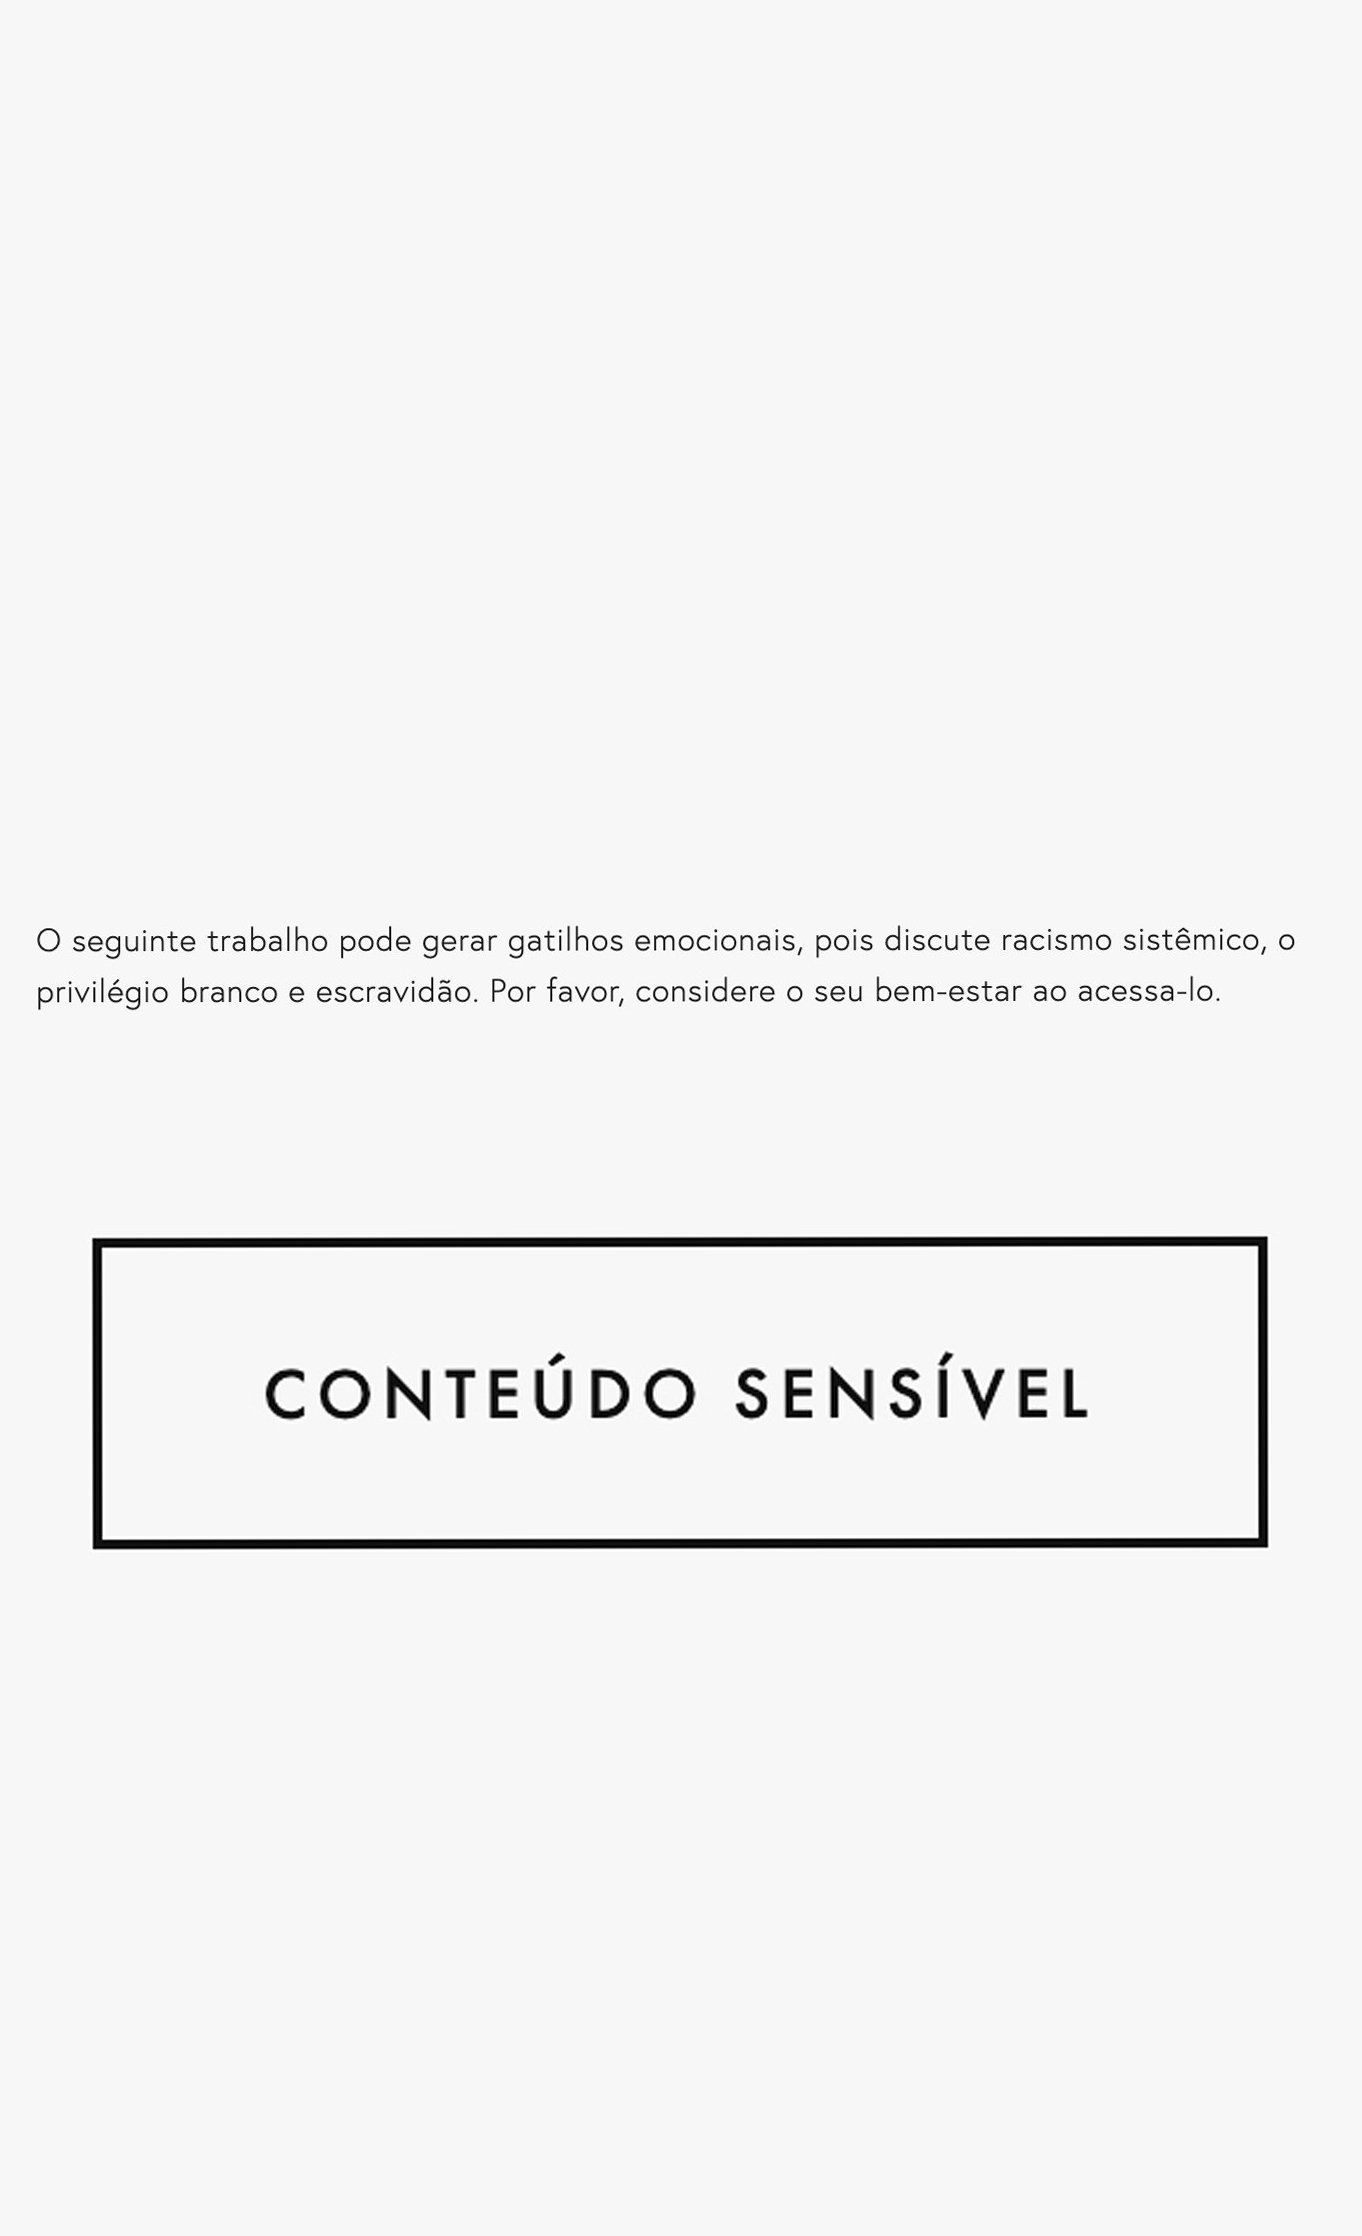 conteudo+sensivel2.jpg